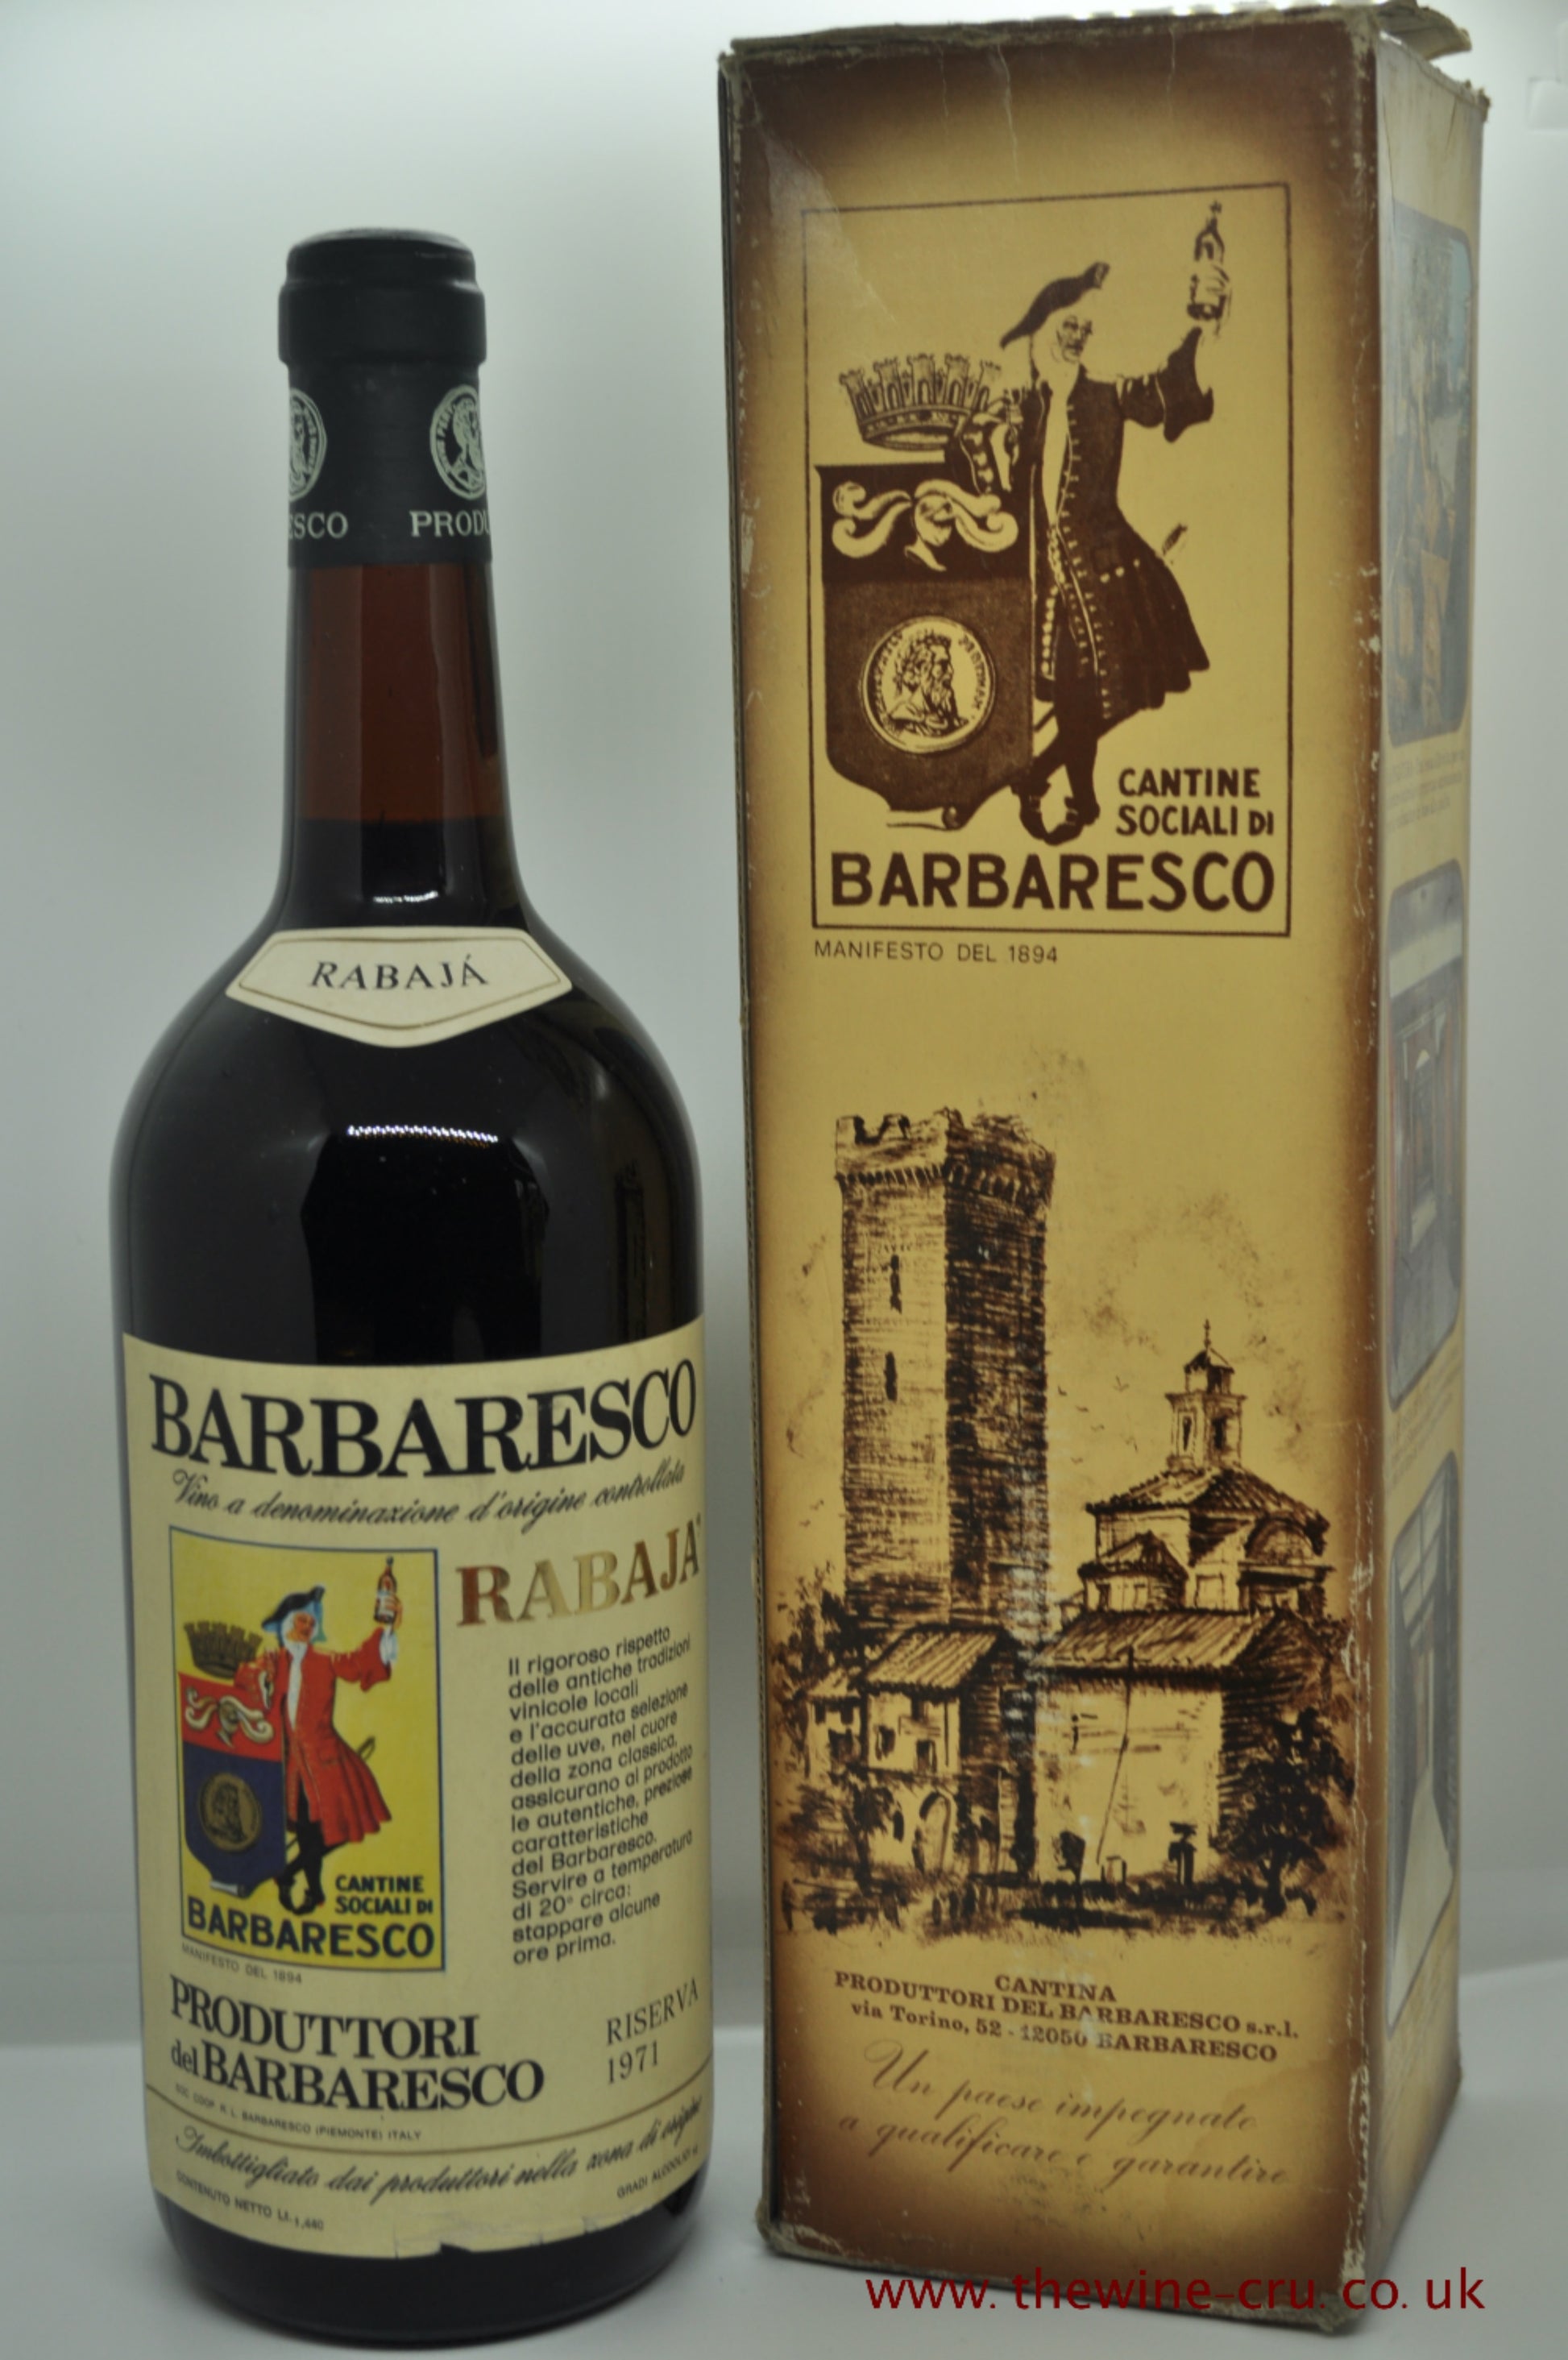 1971 vintage red wine. Barbaresco Produttori Del Barbaresco Magnum 1971. Italy. Immediate delivery UK. Free local delivery.